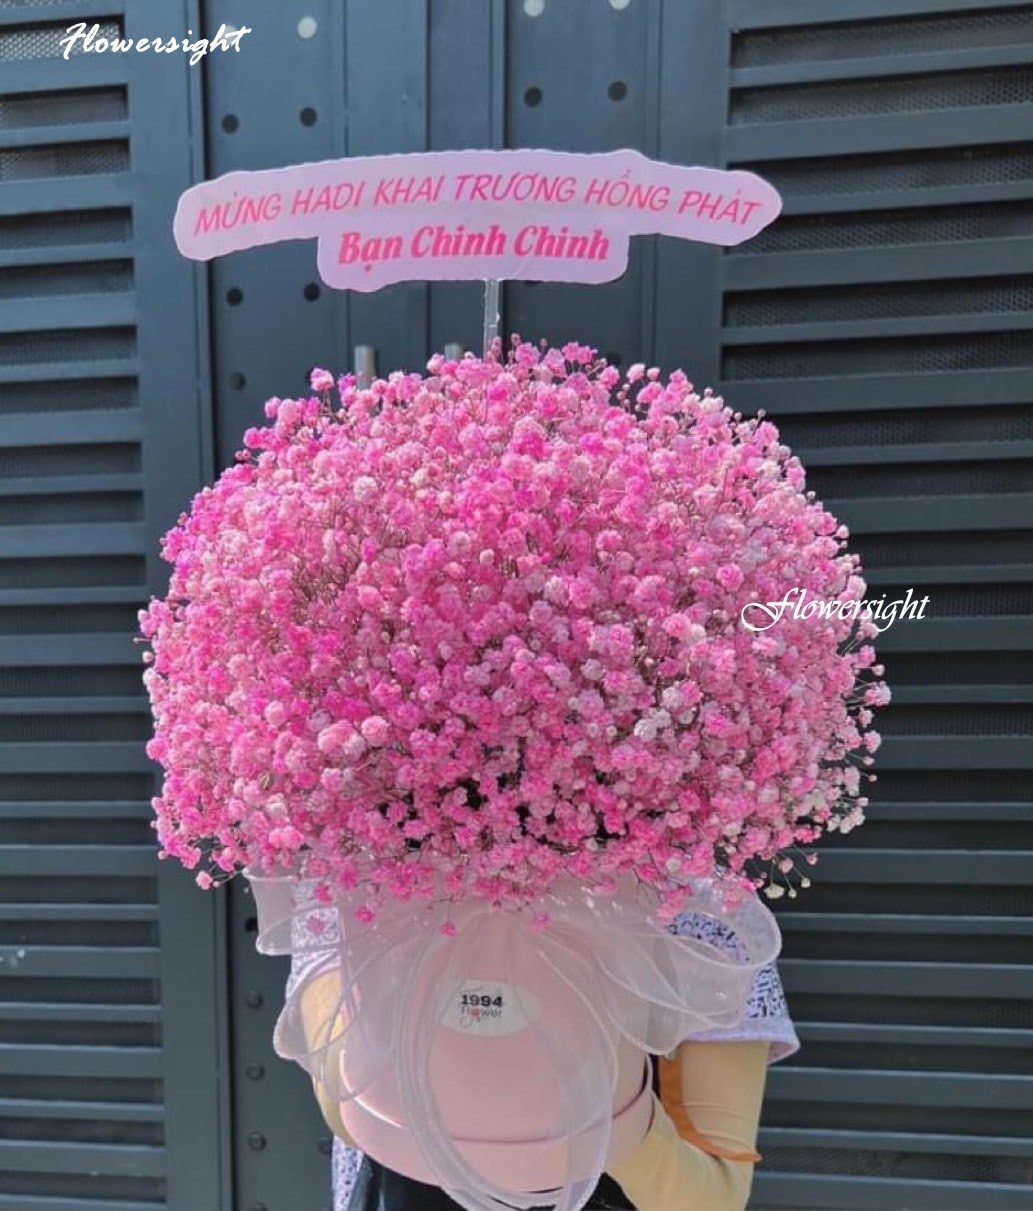 Hộp Hoa baby hồng đẹp tại FlowerSight